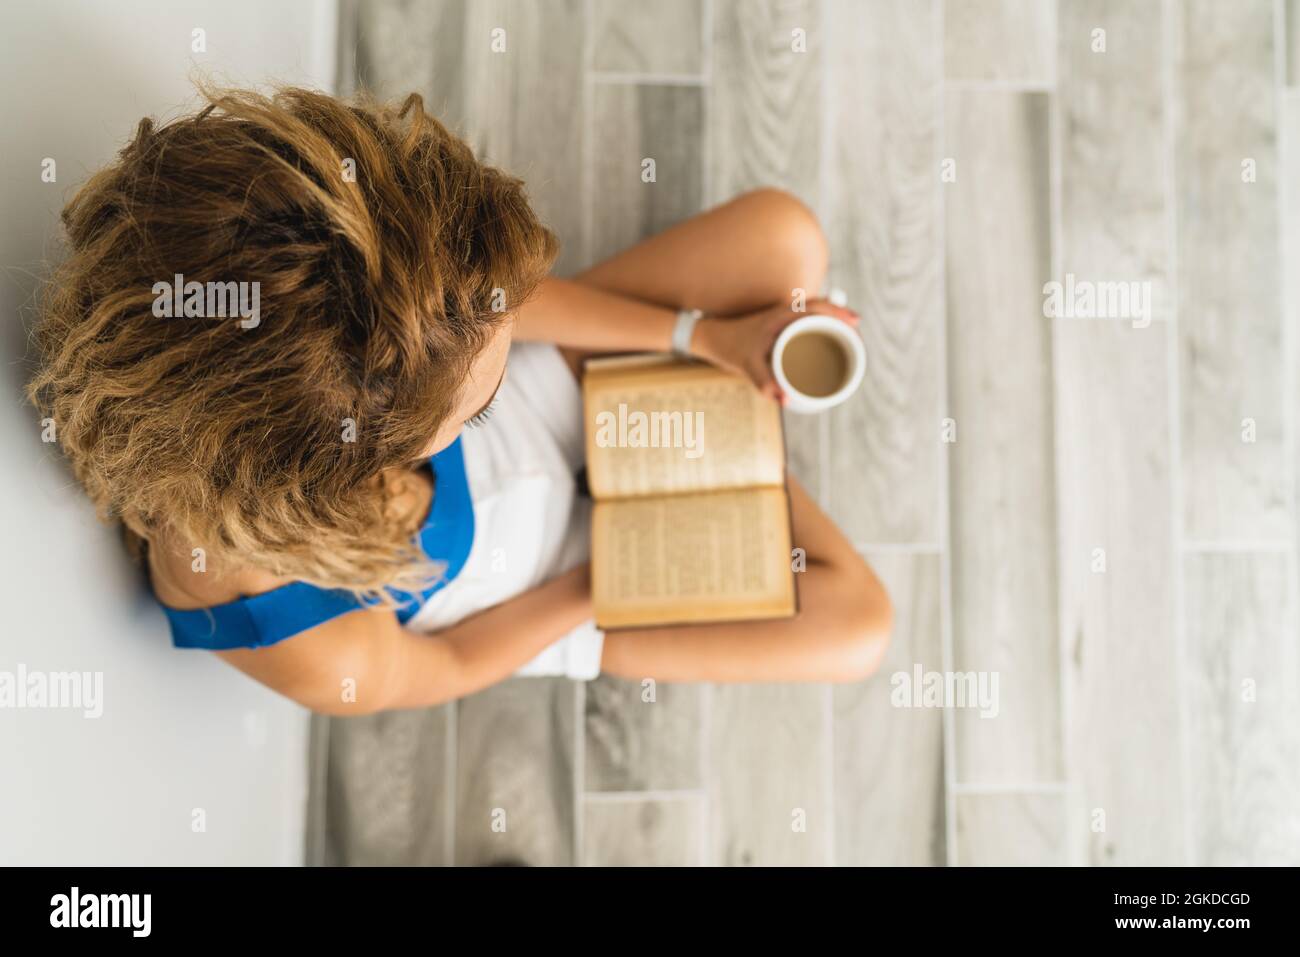 La giovane donna intellettuale si siede a terra e beve una tazza di caffè, mentre sta leggendo un libro. Foto di alta qualità Foto Stock